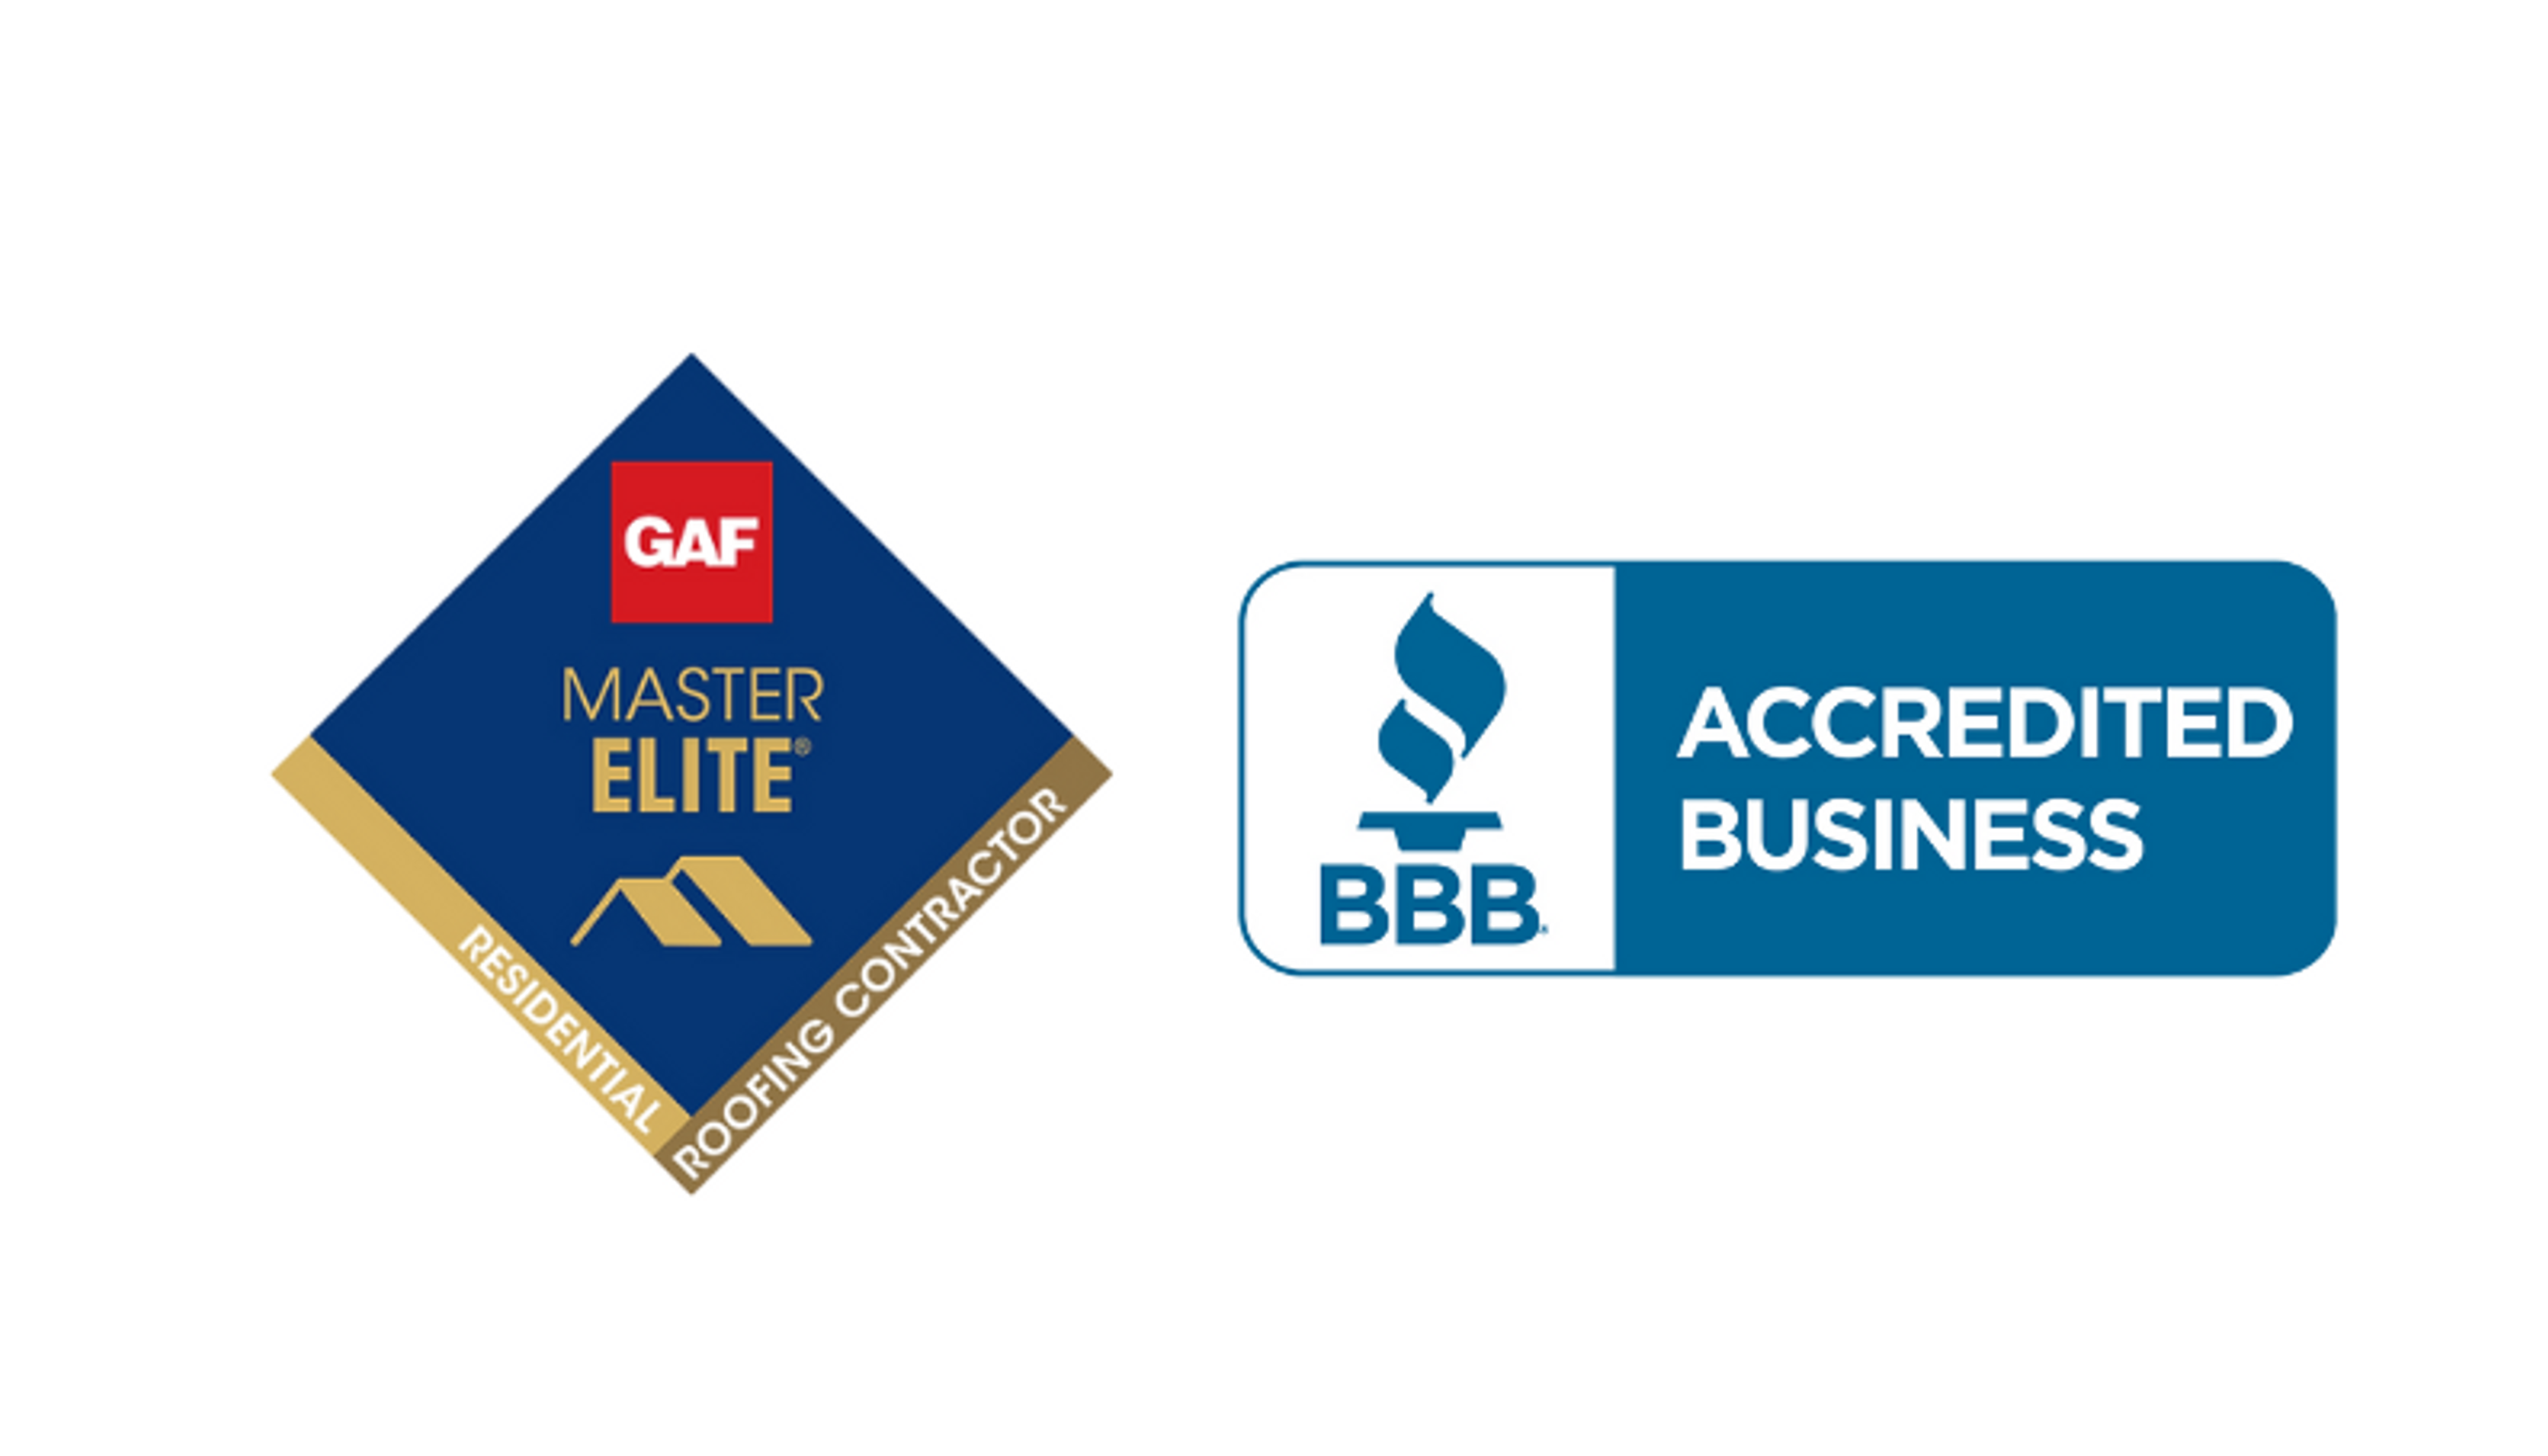 GAF Master Elite & BBB Credited Business badges